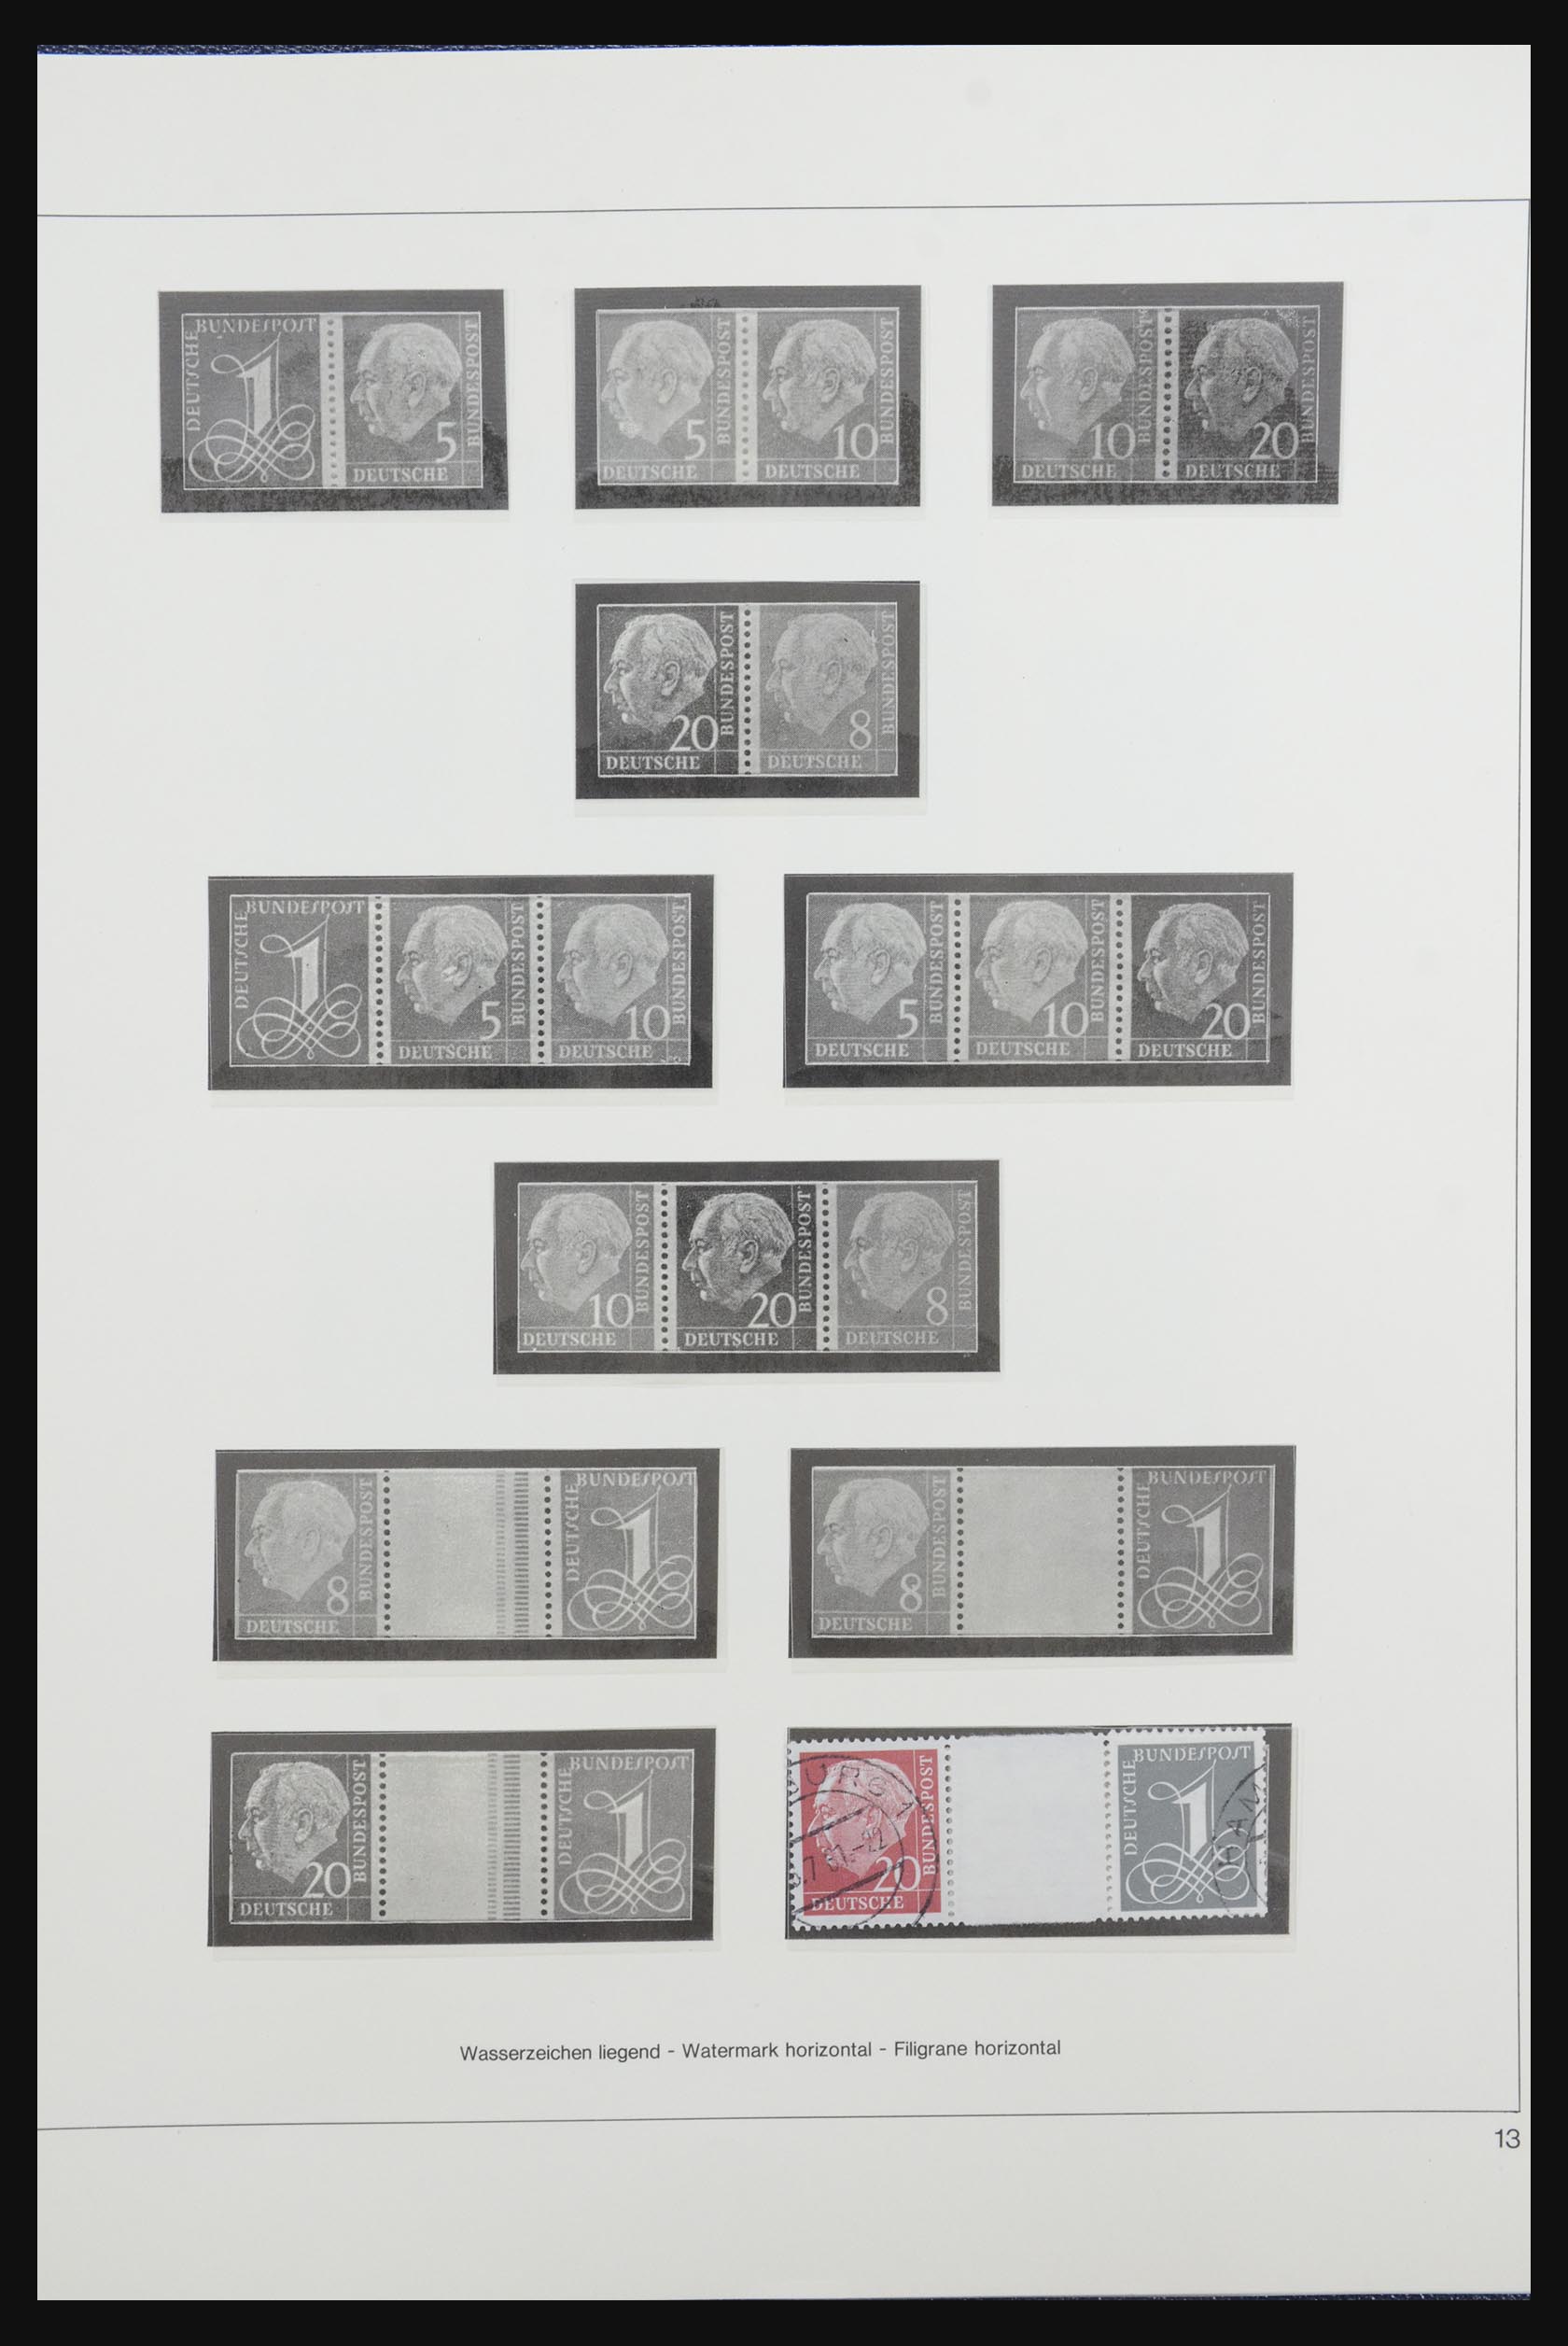 31842 016 - 31842 Bundespost combinations 1951-2003.